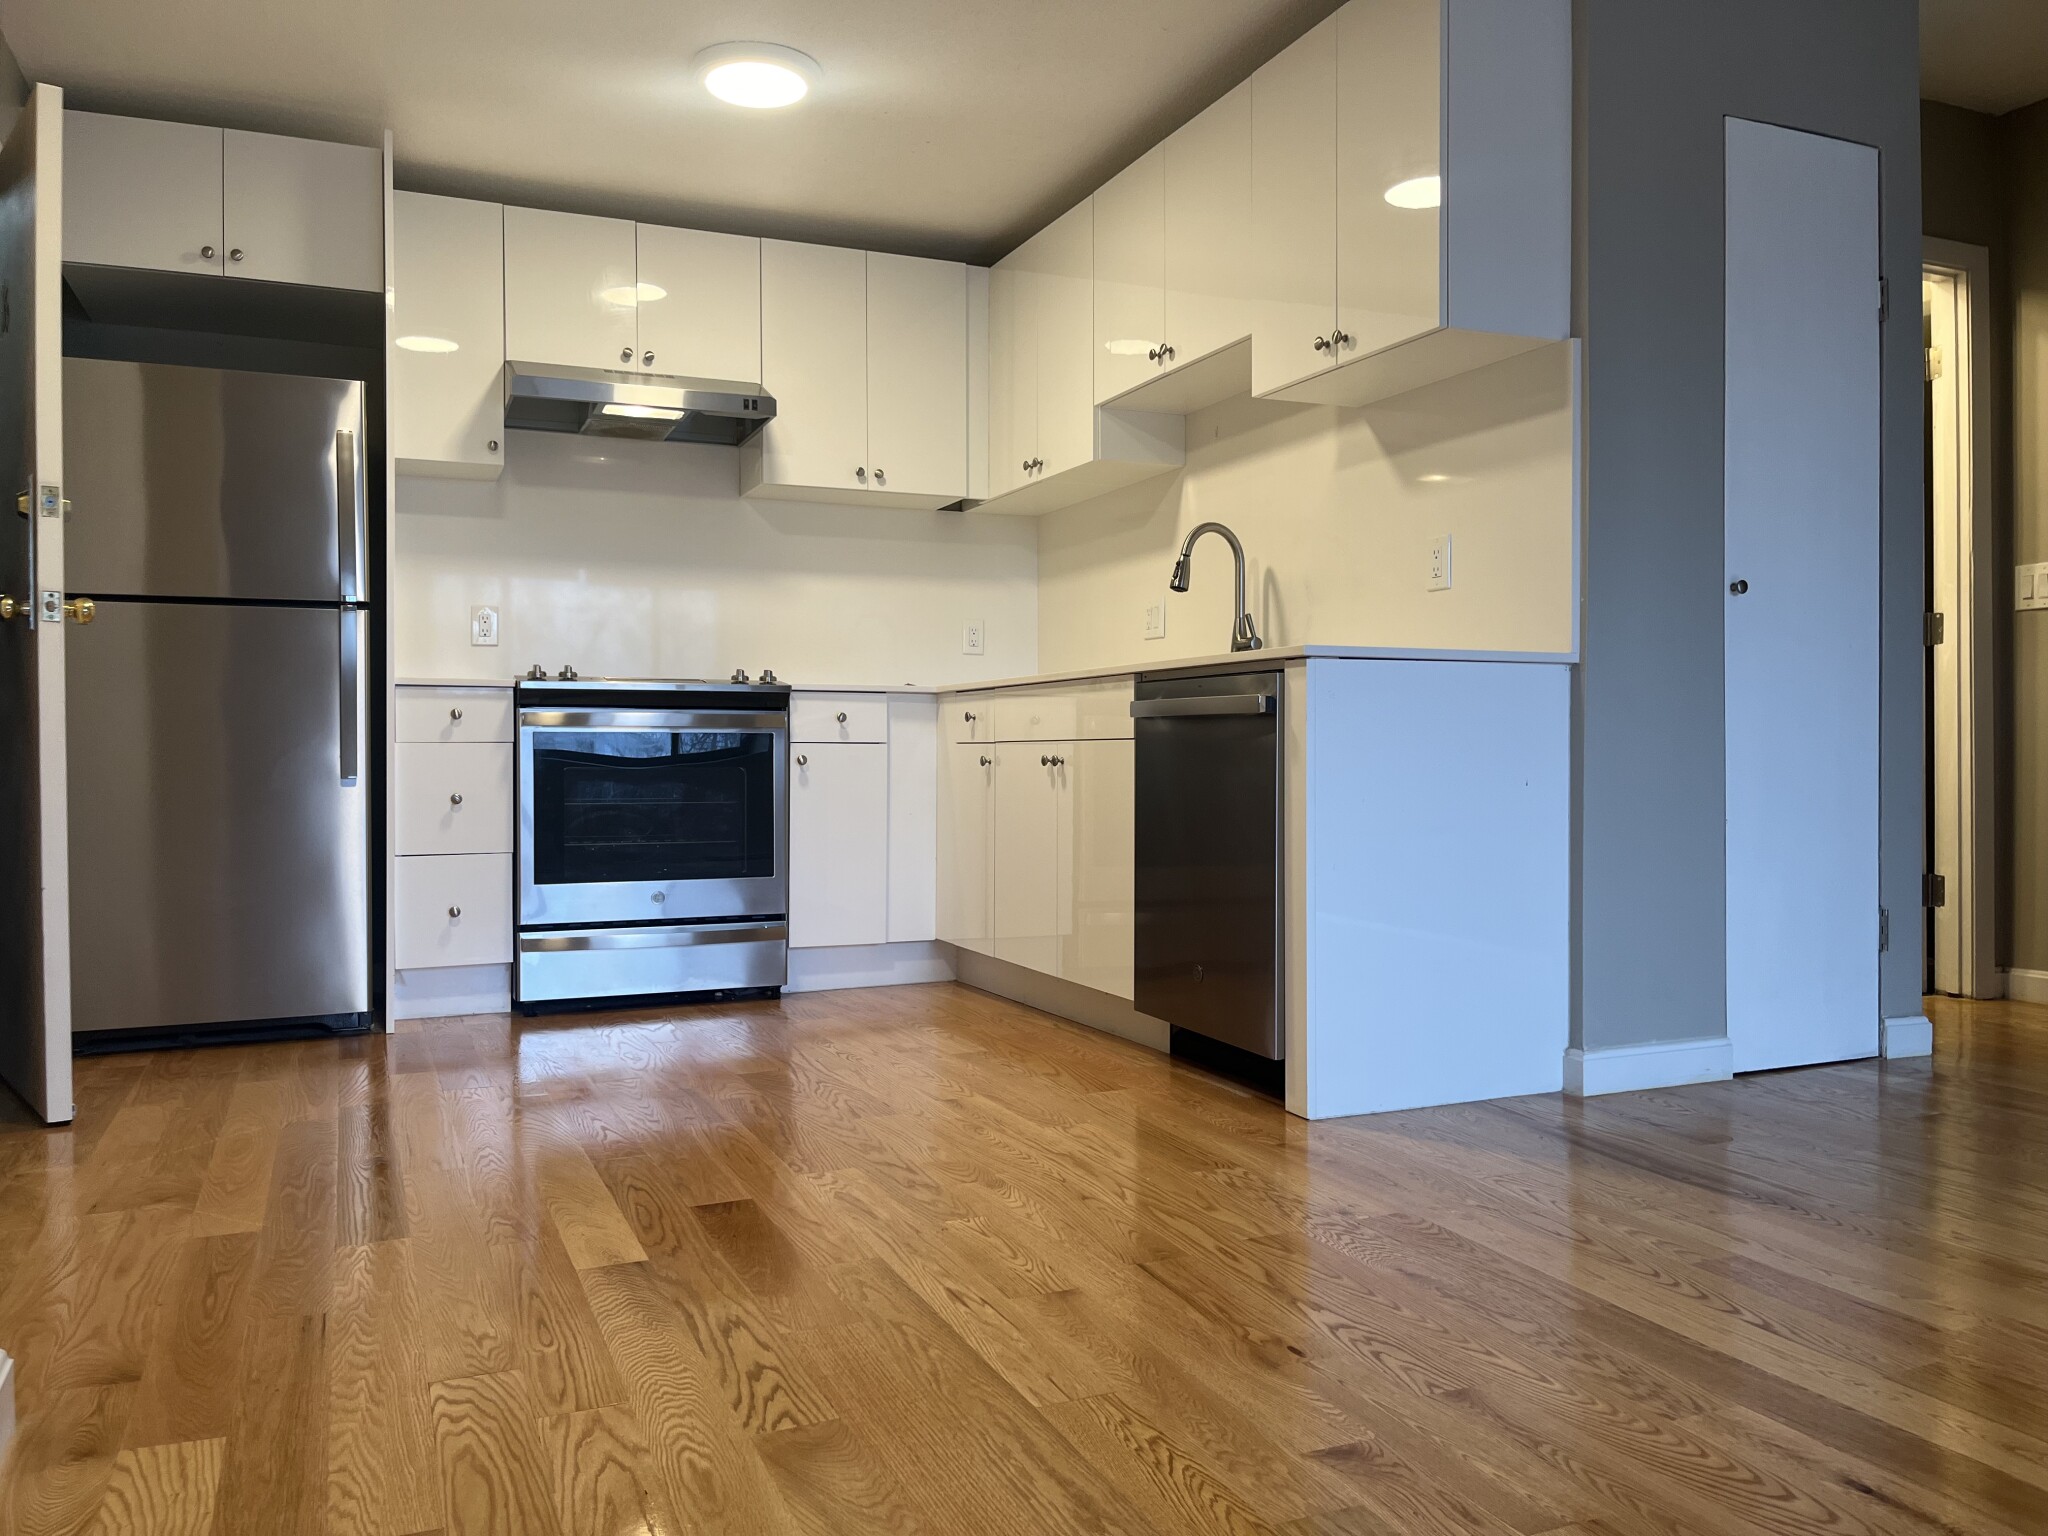 Photos of apartment on Worthington,Boston MA 02120